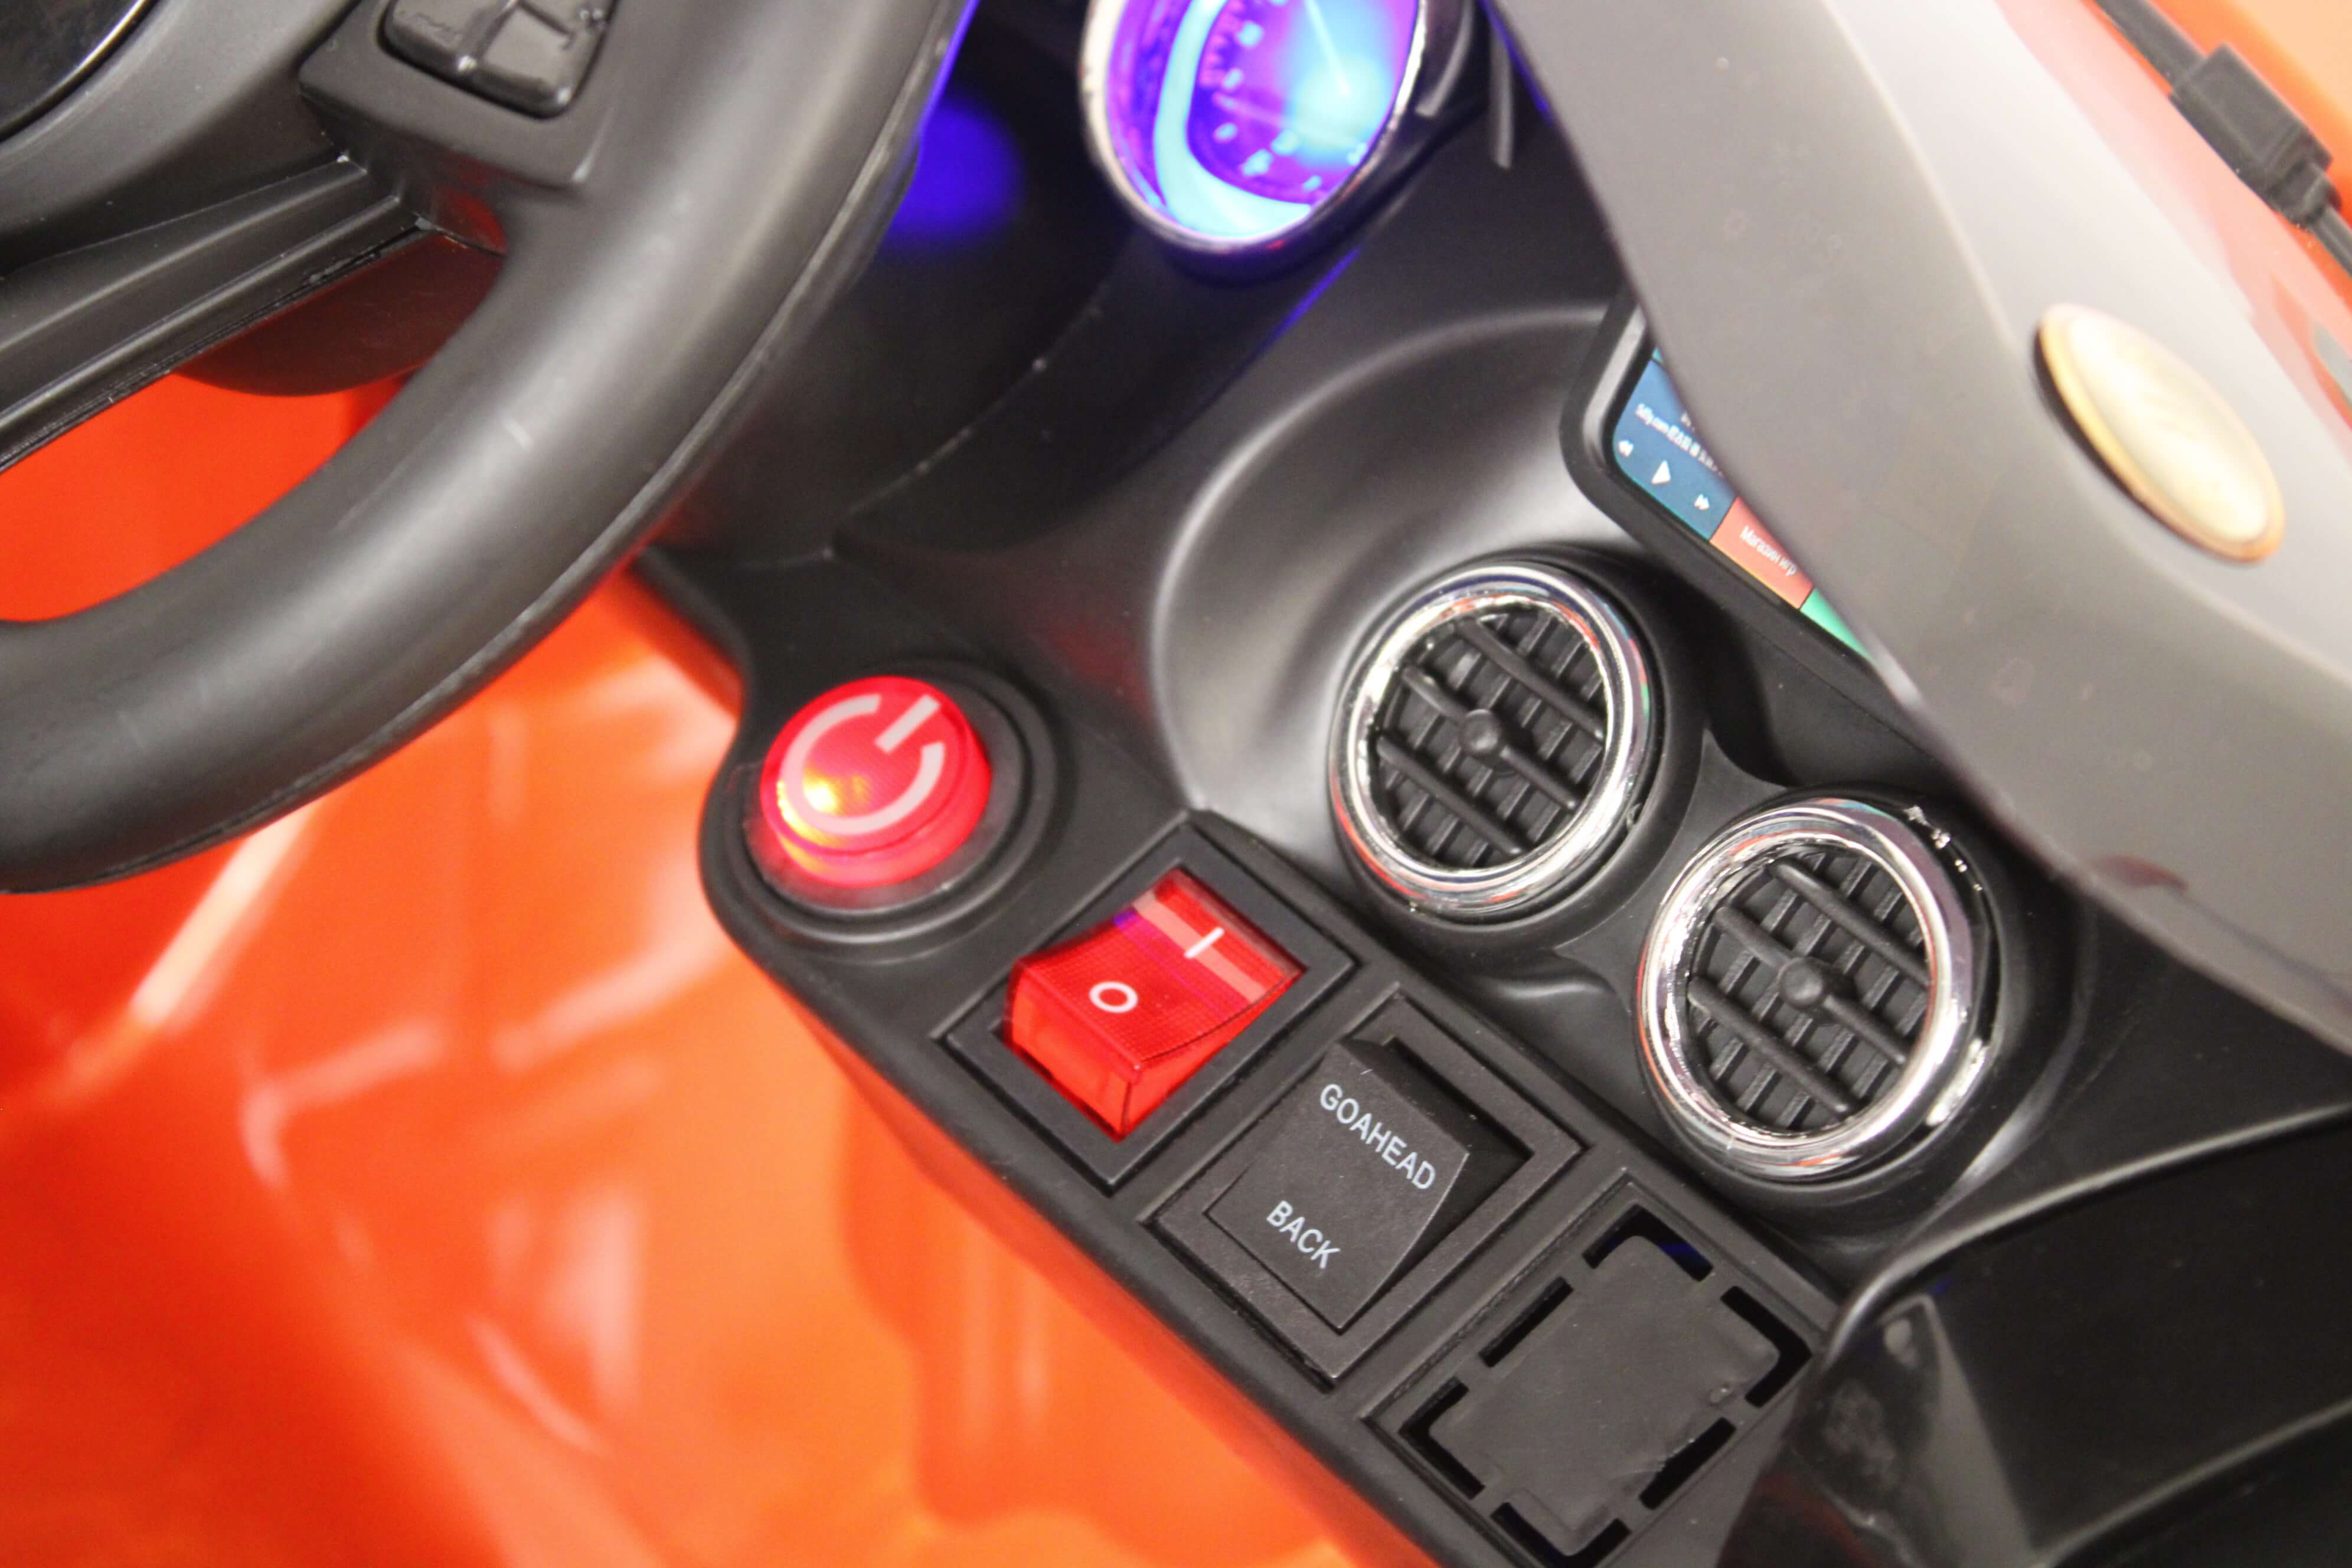 Электромобиль MERCEDES-BENZ AMG GT (Лицензионный) с пультом (Оранжевый) o008oo